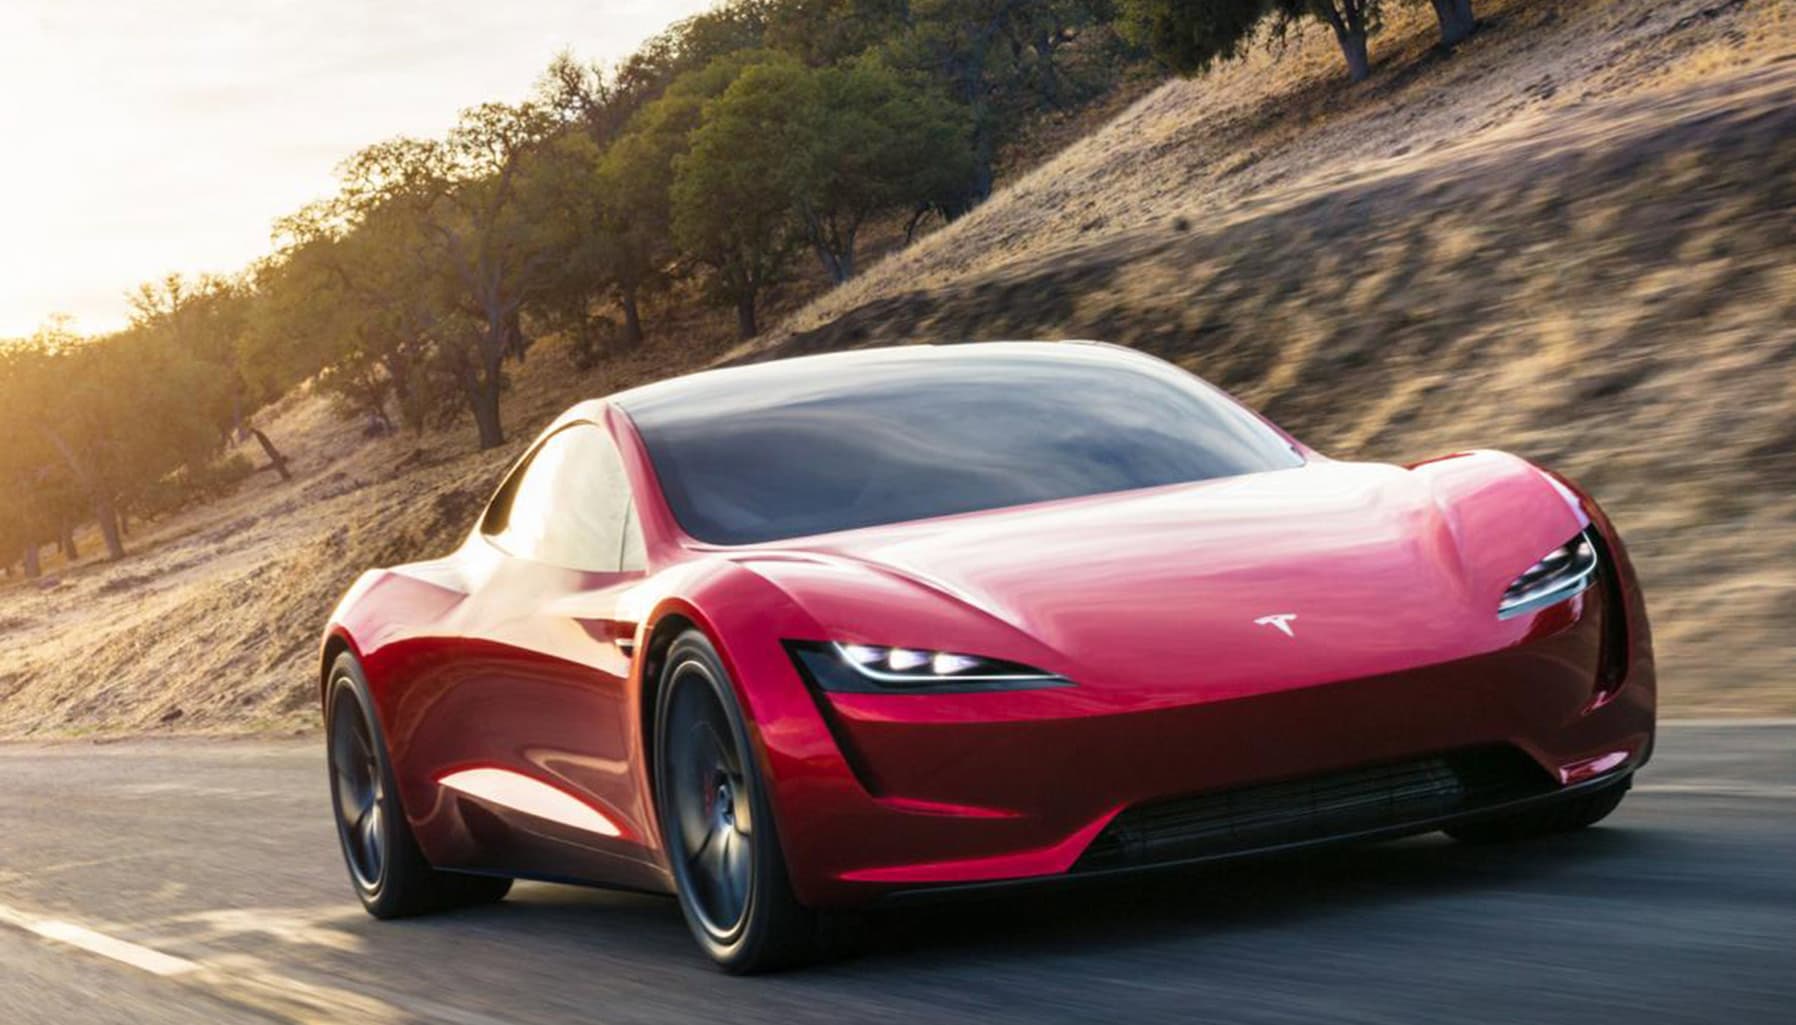 Quái kiệt hay thiên tài – Elon Musk lắp động cơ tên lửa cho xe Tesla Roadster